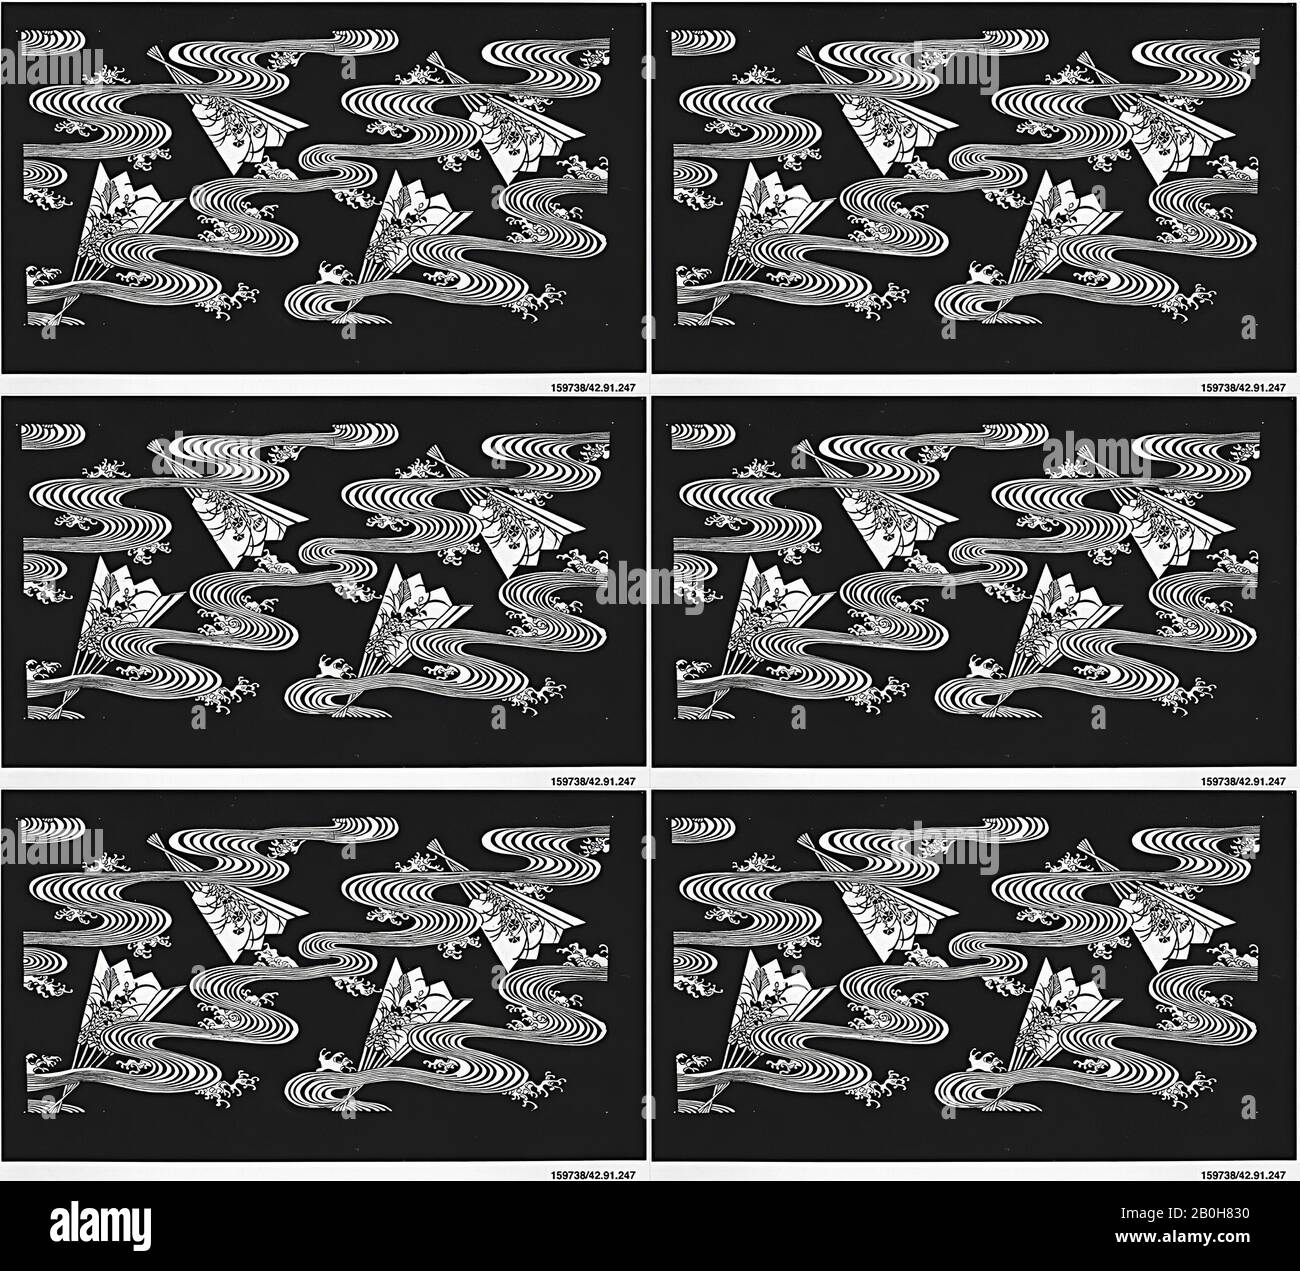 Papier verstärkt -Fotos und -Bildmaterial in hoher Auflösung – Alamy